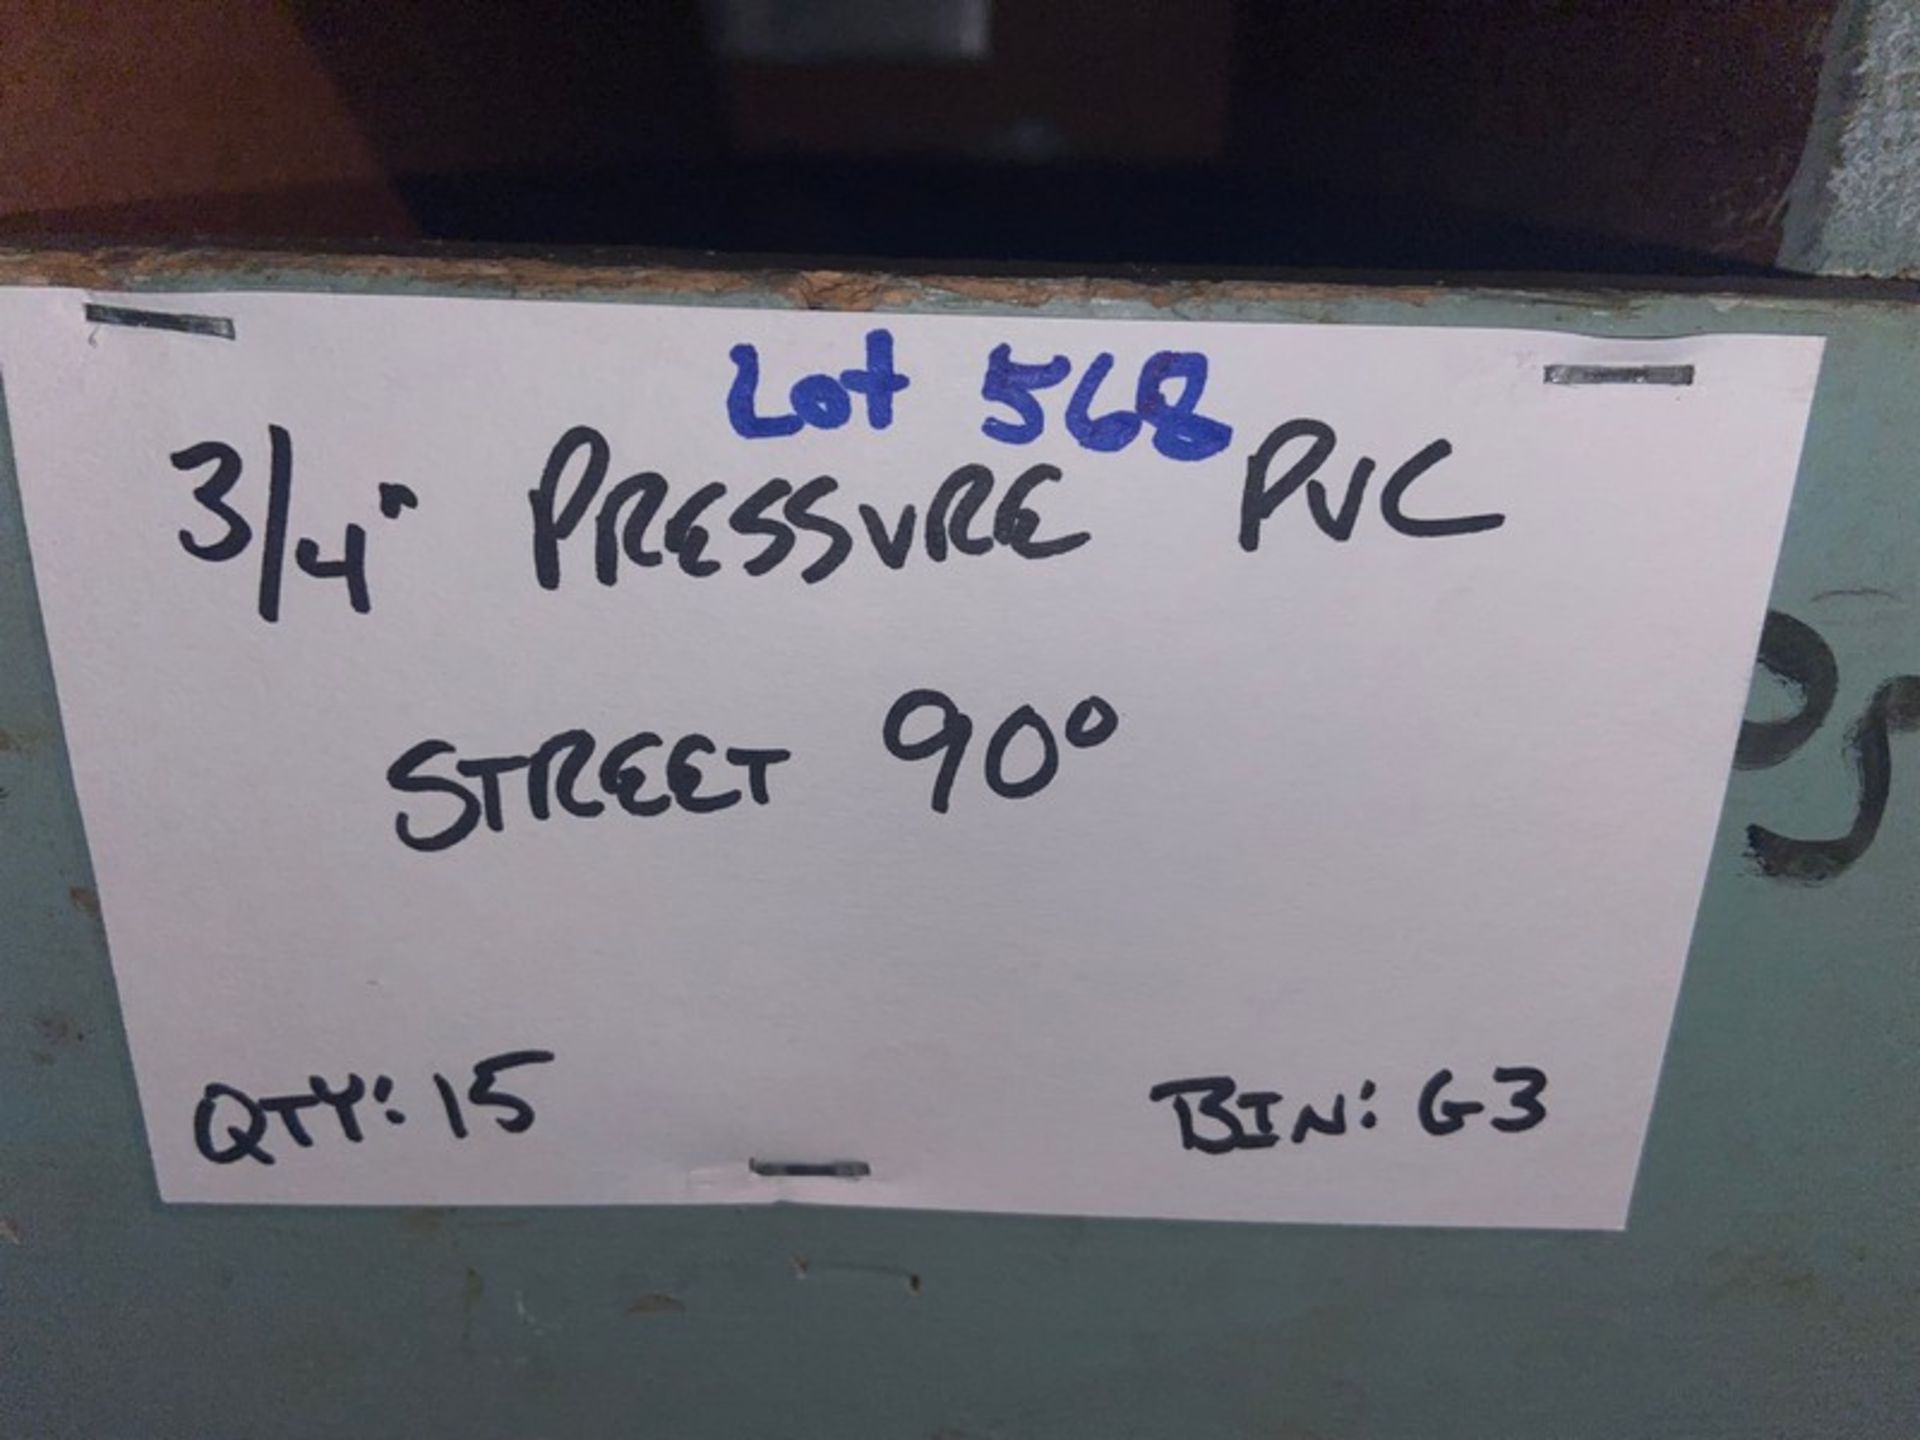 (15) 3/4” Pressure PVC Stree5 (Bin:G3), Includes (48) 3/4” Pressure PVC 45’ (Bin:G3) (LOCATED IN - Bild 4 aus 8